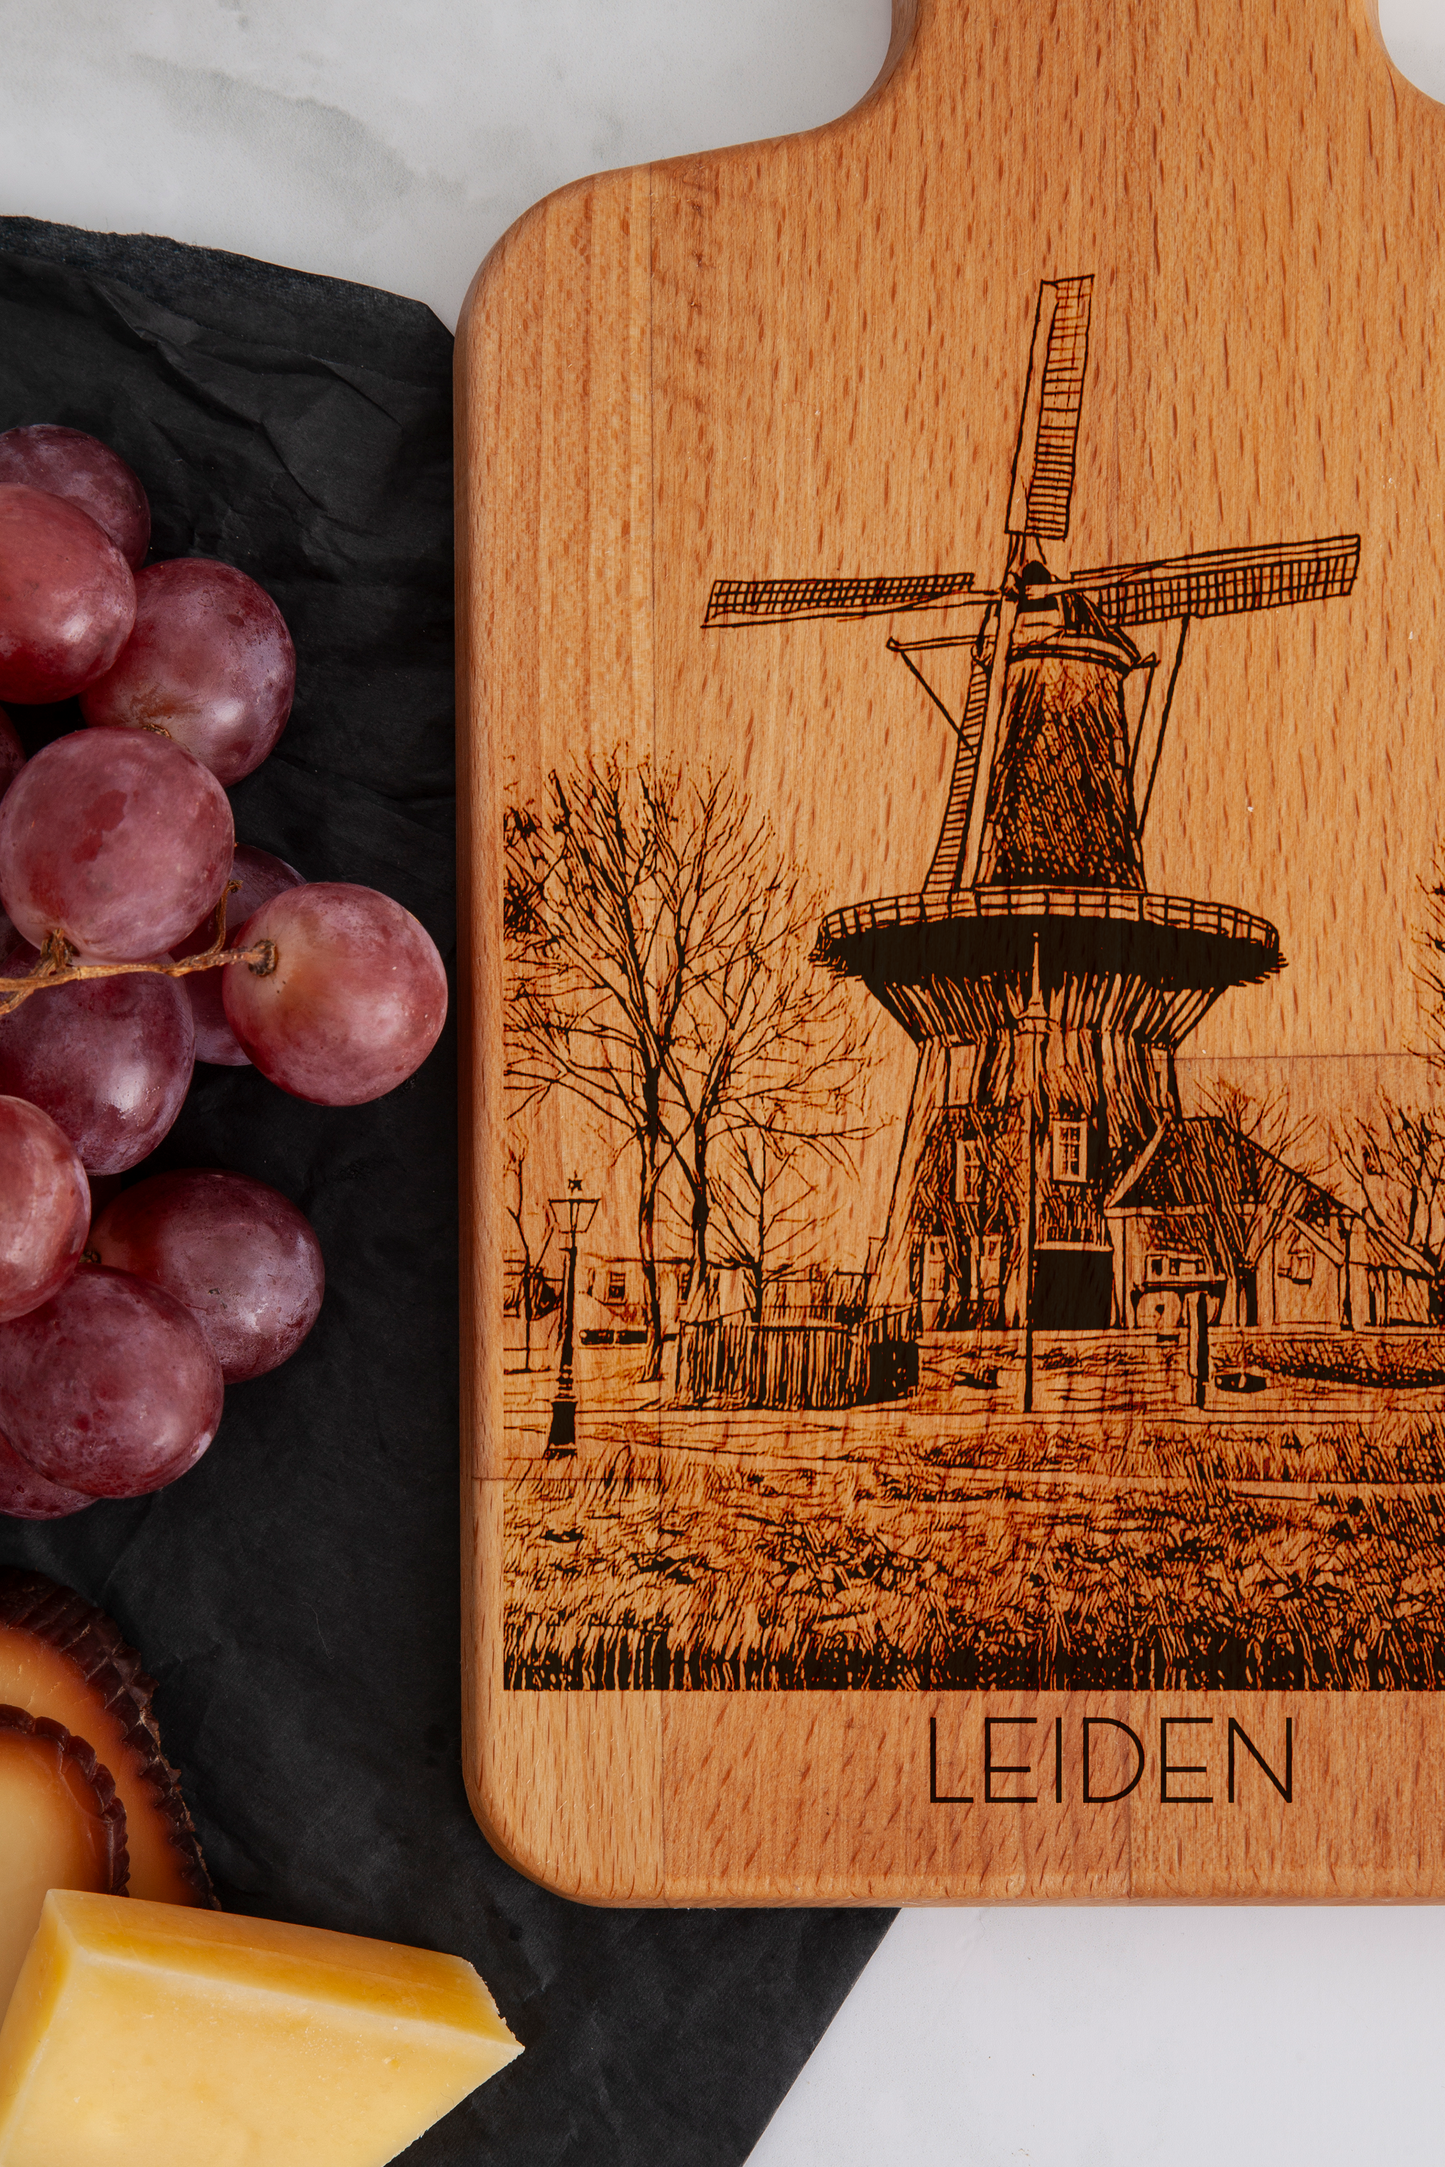 Leiden, Molen De Valk, cheese board, close-up